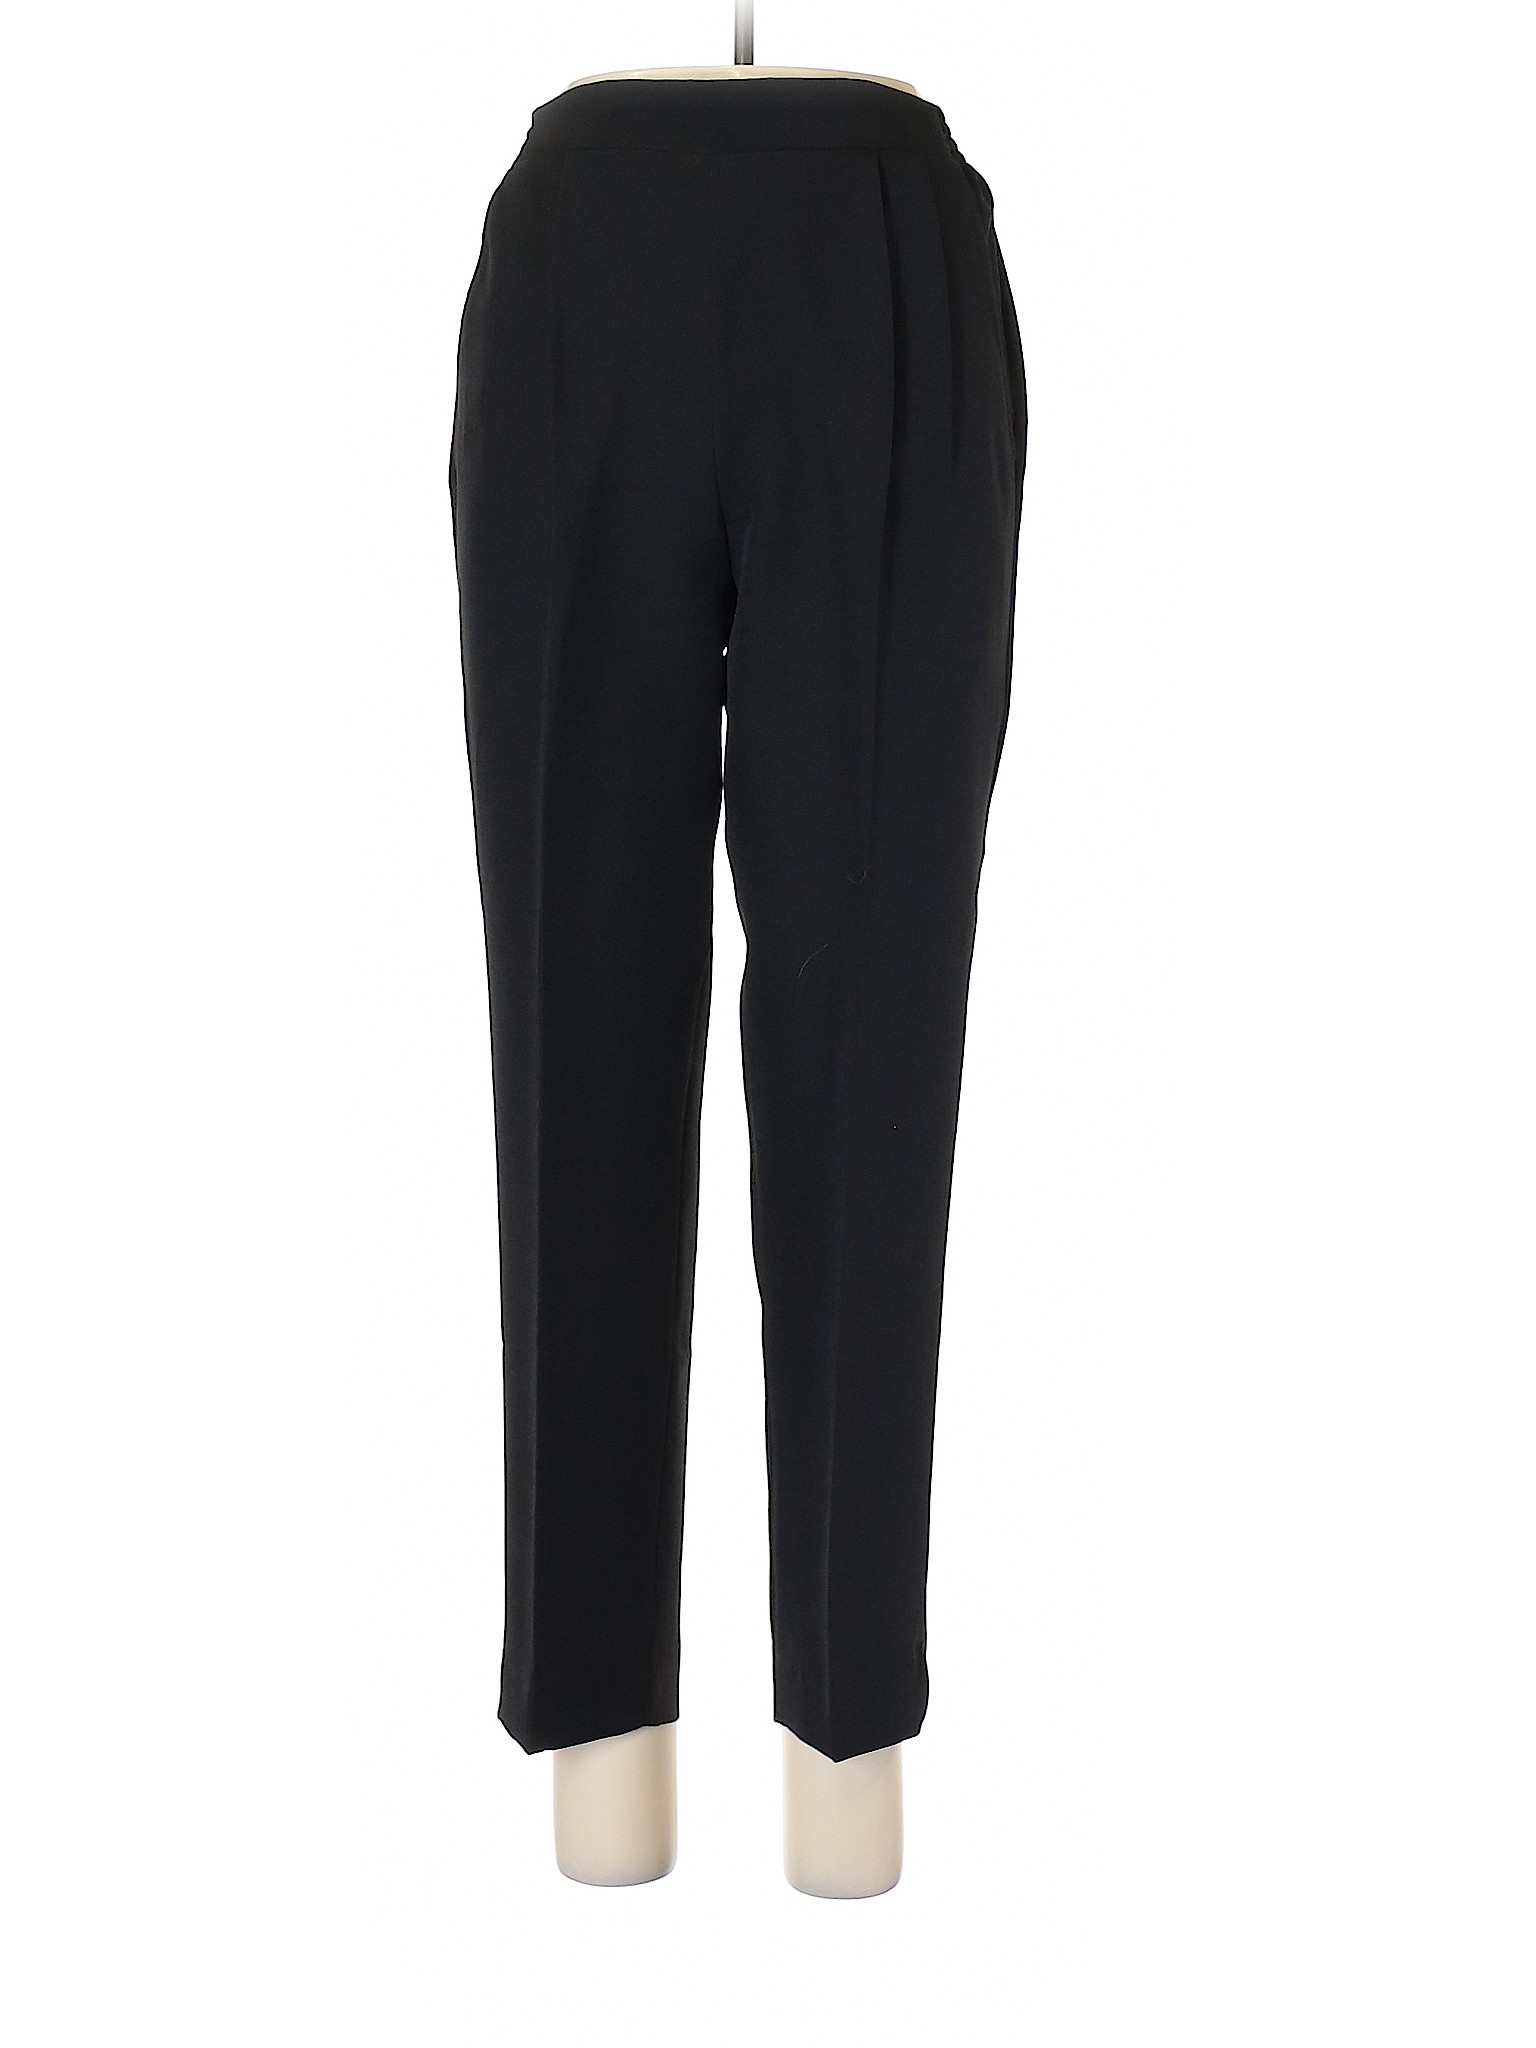 Blair Women Black Dress Pants 10 | eBay